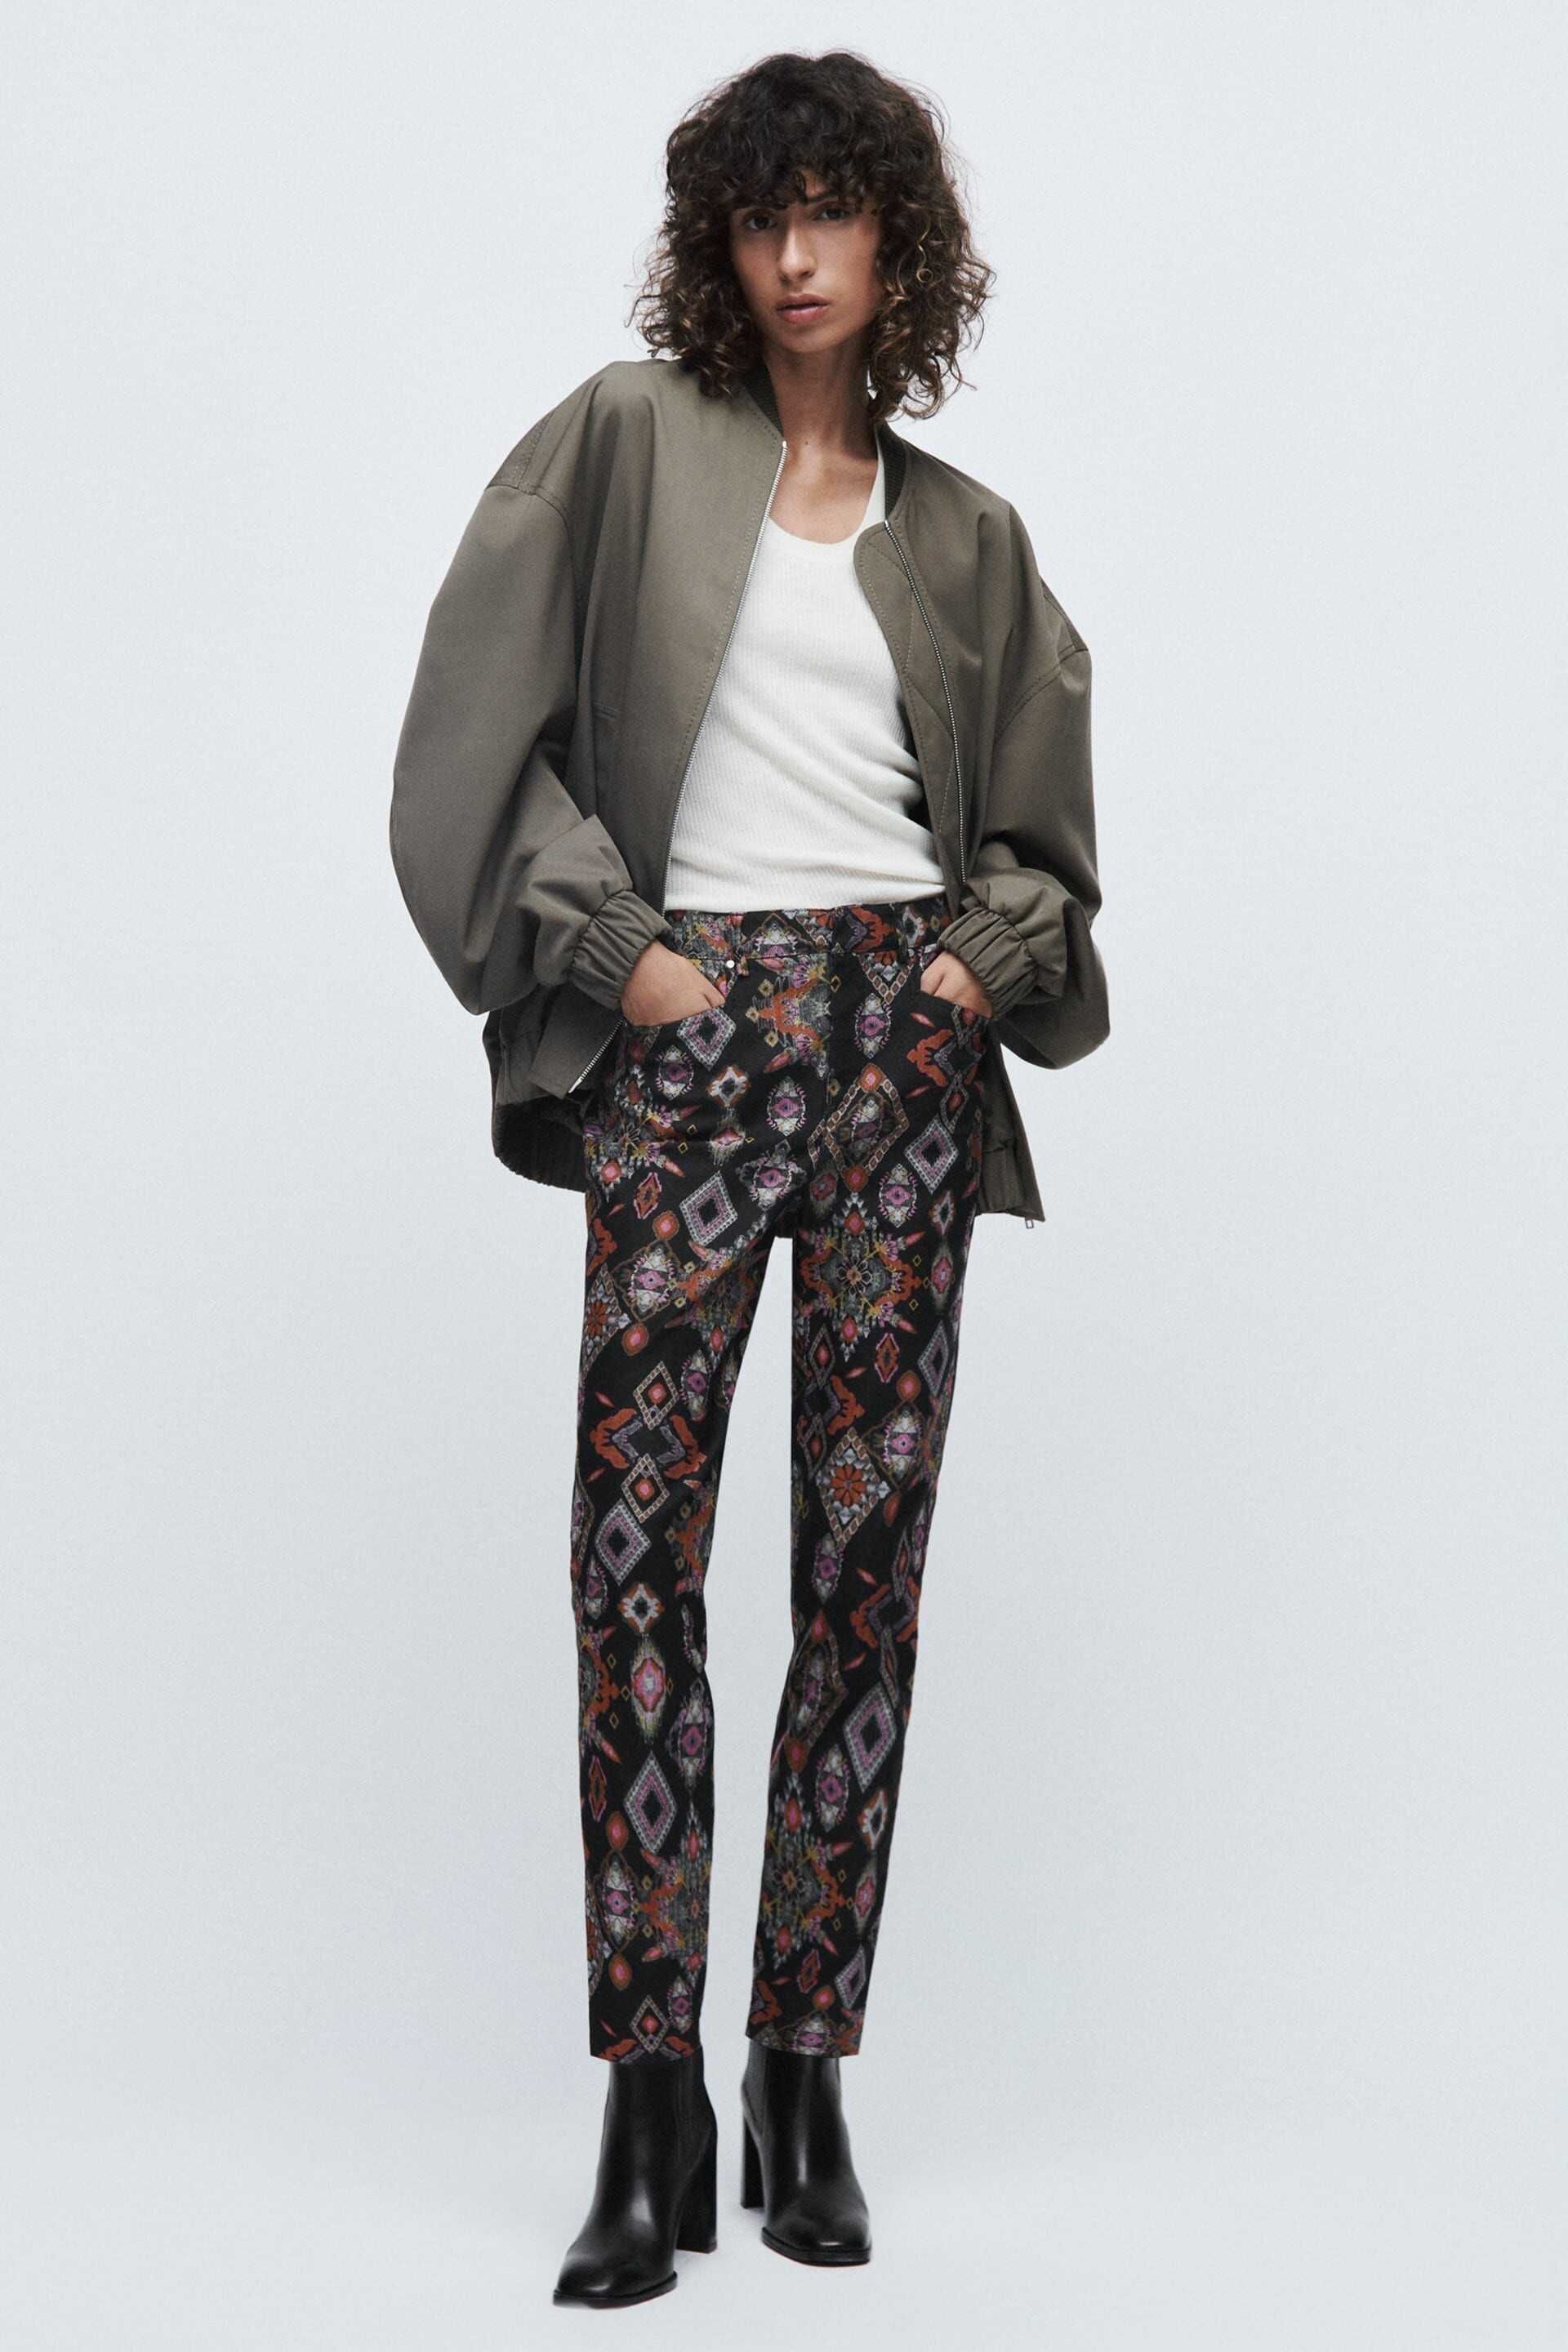 Дамски щампован панталон с висока талия Zara, Slim-Fit, XXL